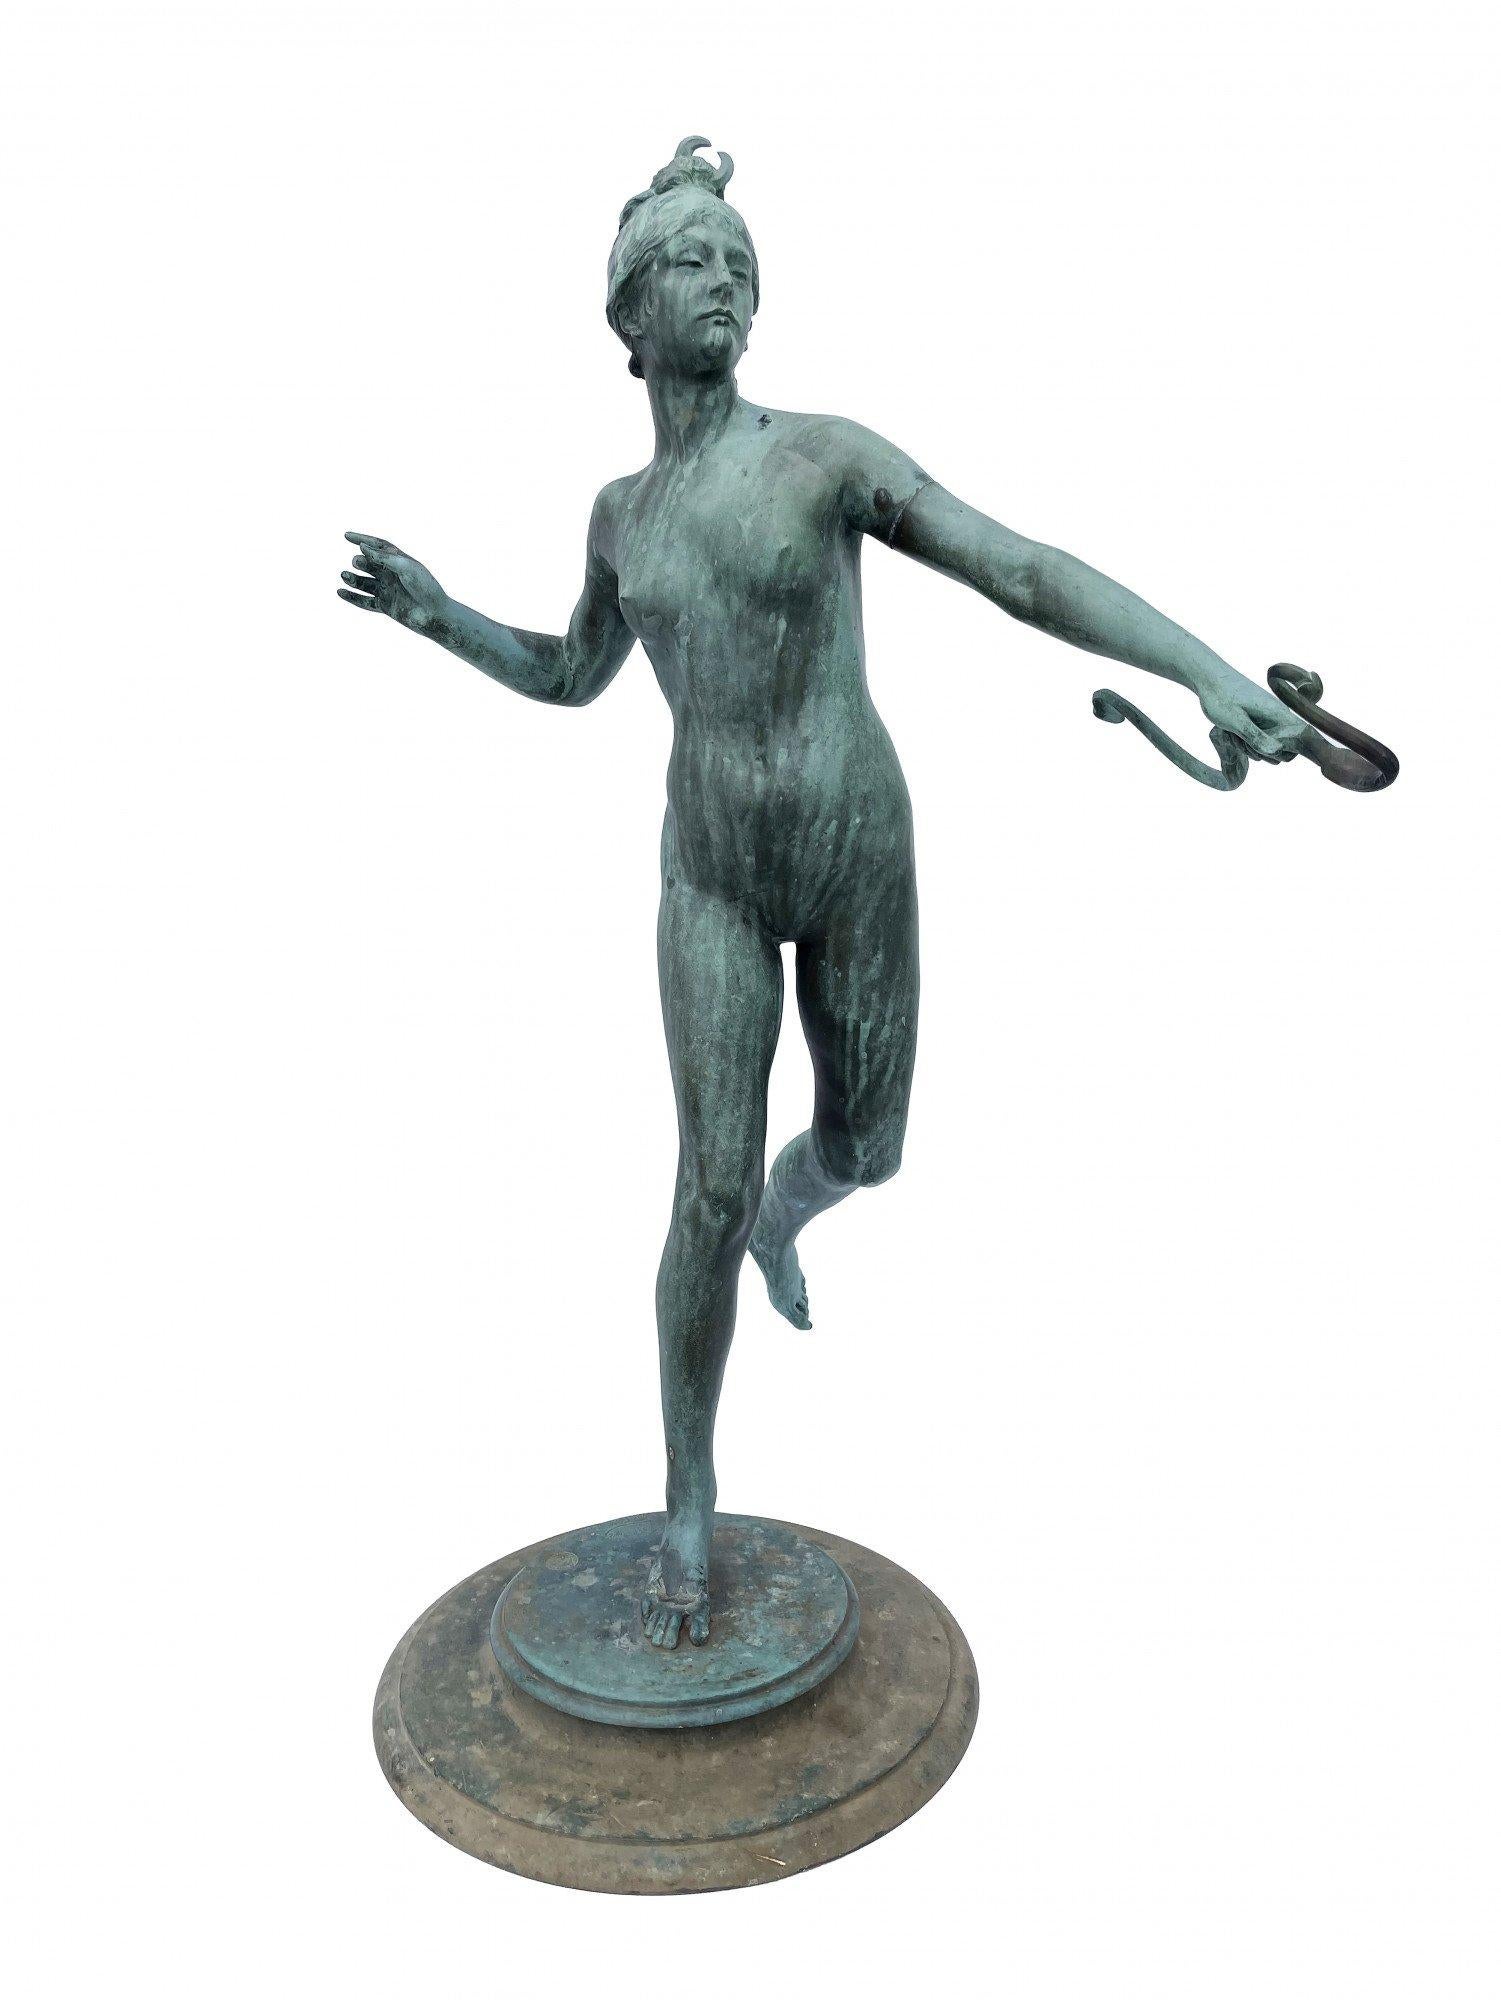 Frederick William MacMonnies Figurative Sculpture - Diana the Huntress, 1890 classical bronze sculpture